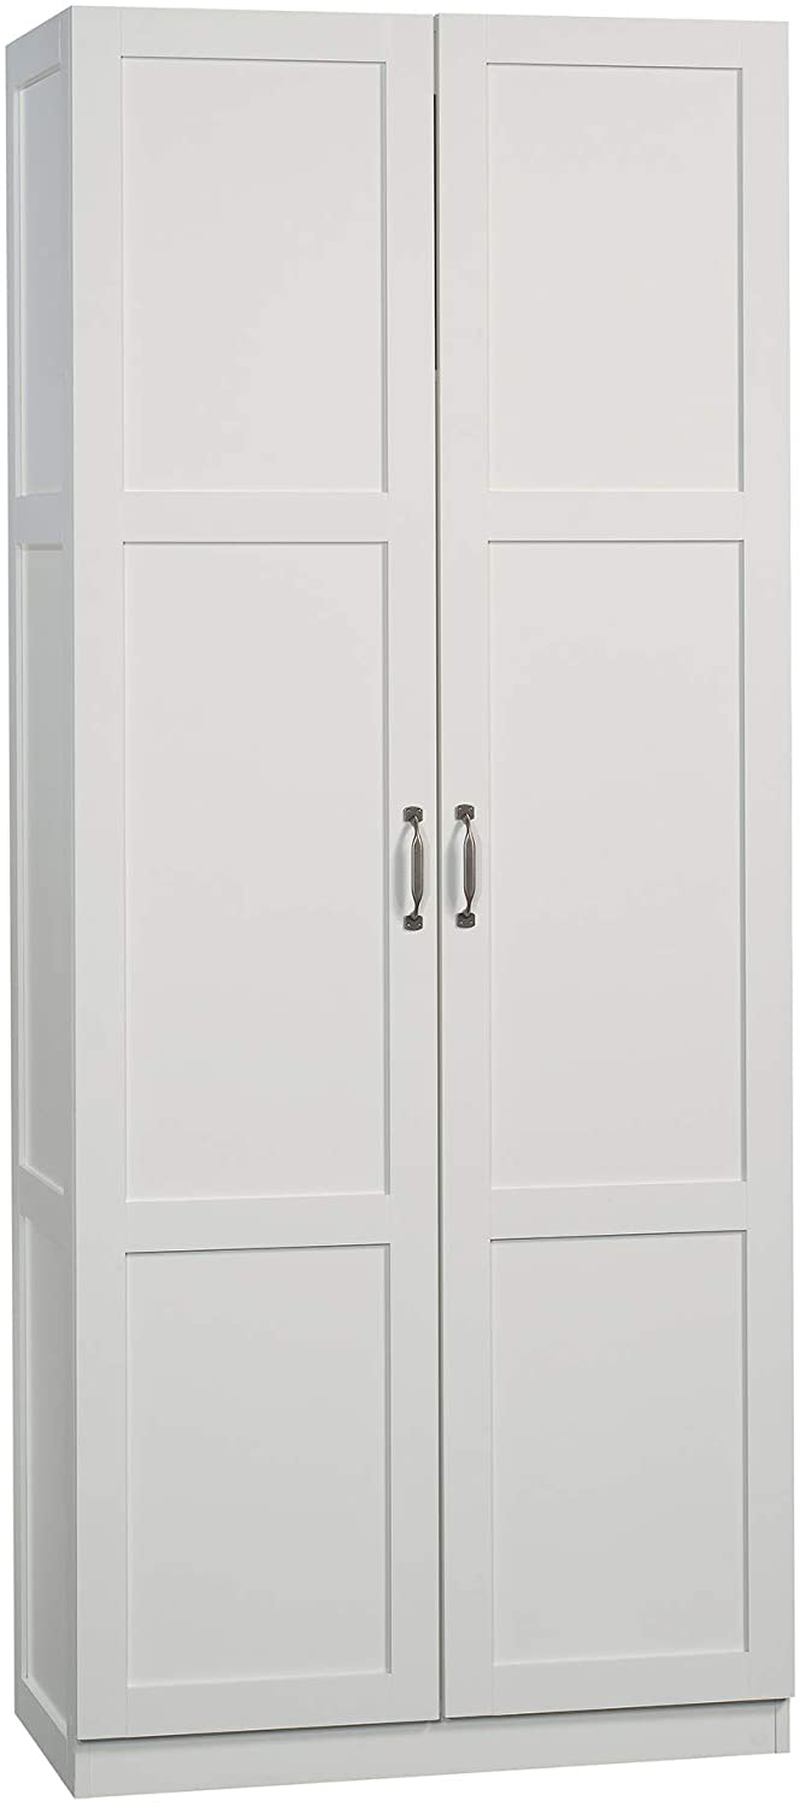 Sauder Storage Cabinet, Highland Oak Finish